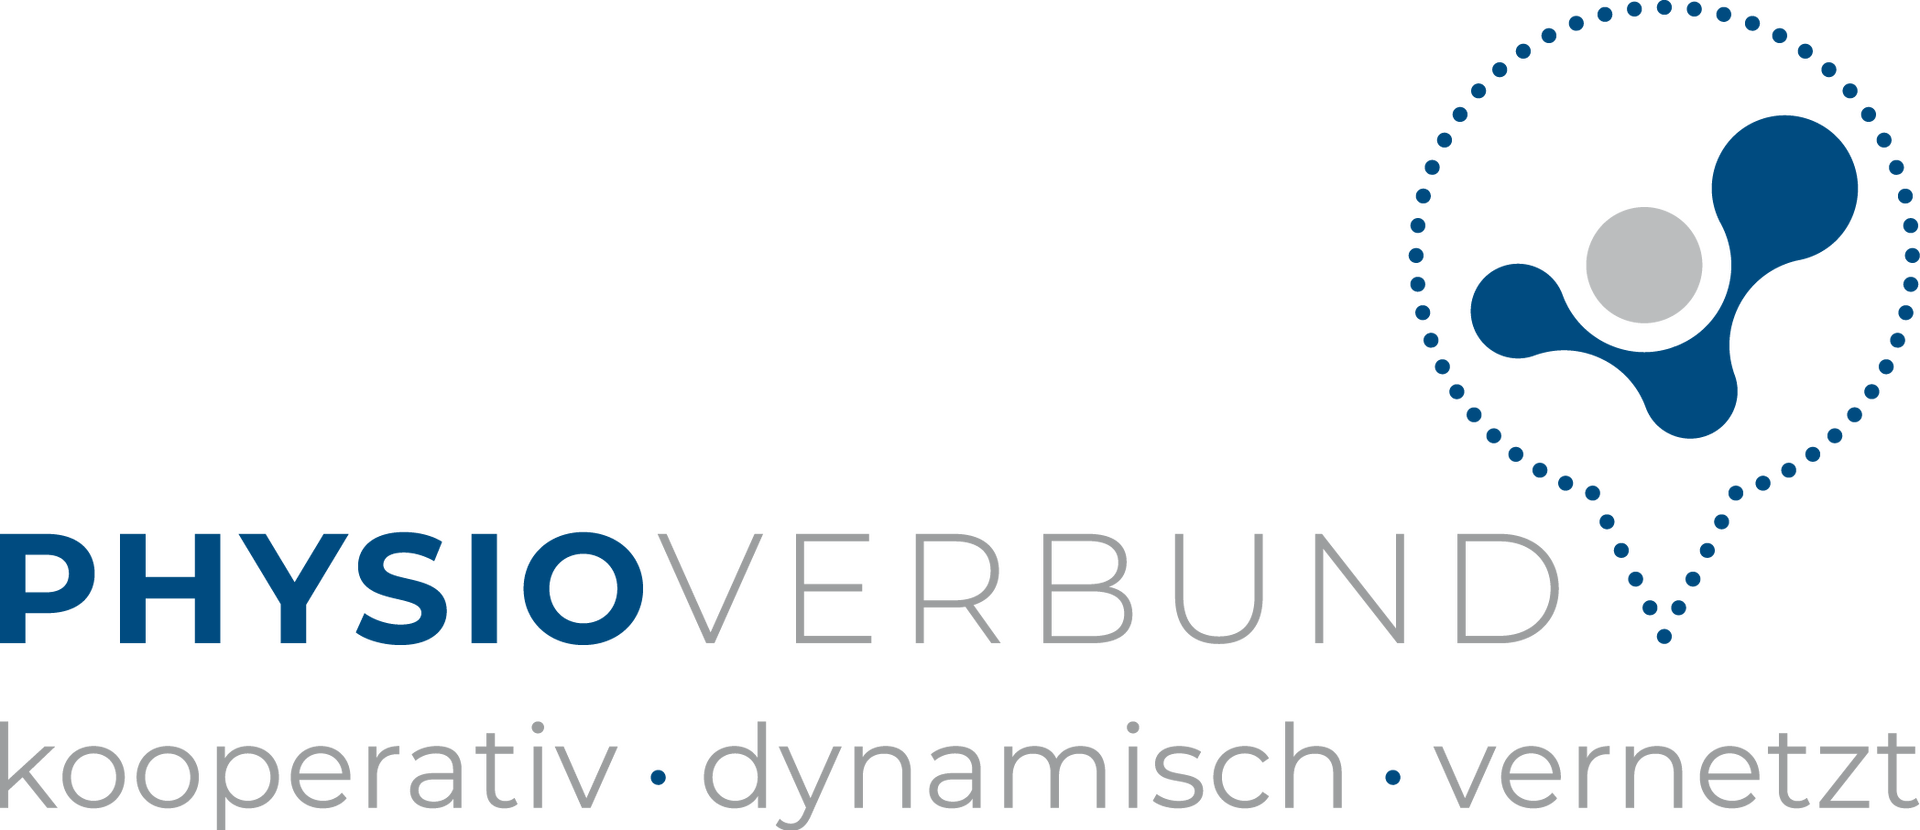 RZ Logo Physioverbund farbig CMYK